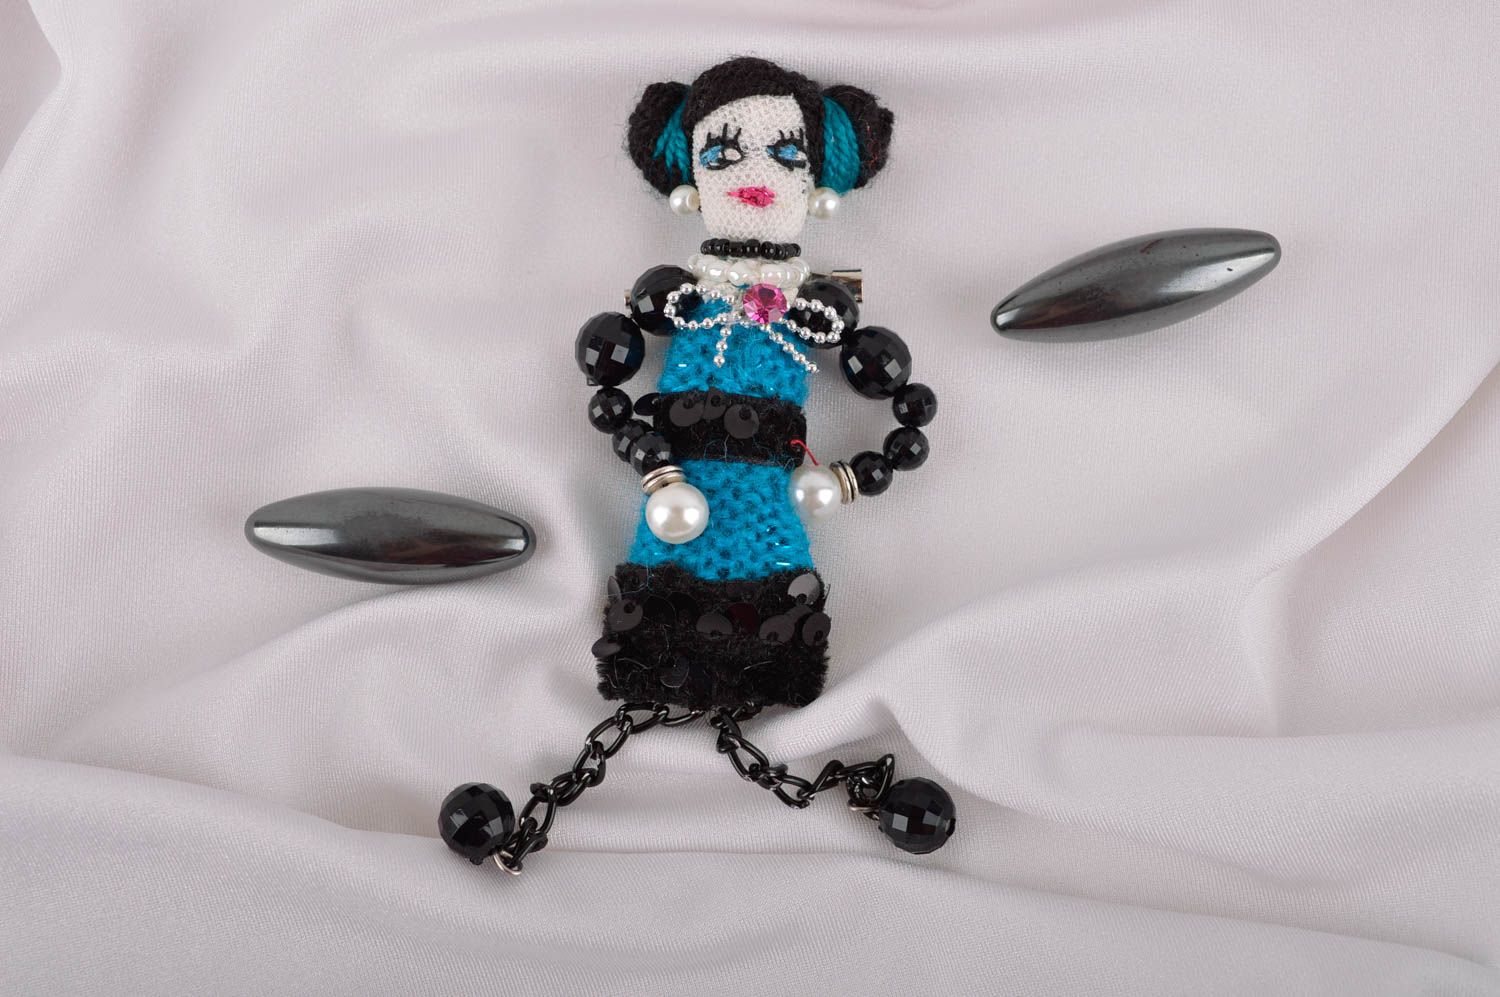 Брошь ручной работы текстильная брошь авторское украшение в виде куклы фото 1